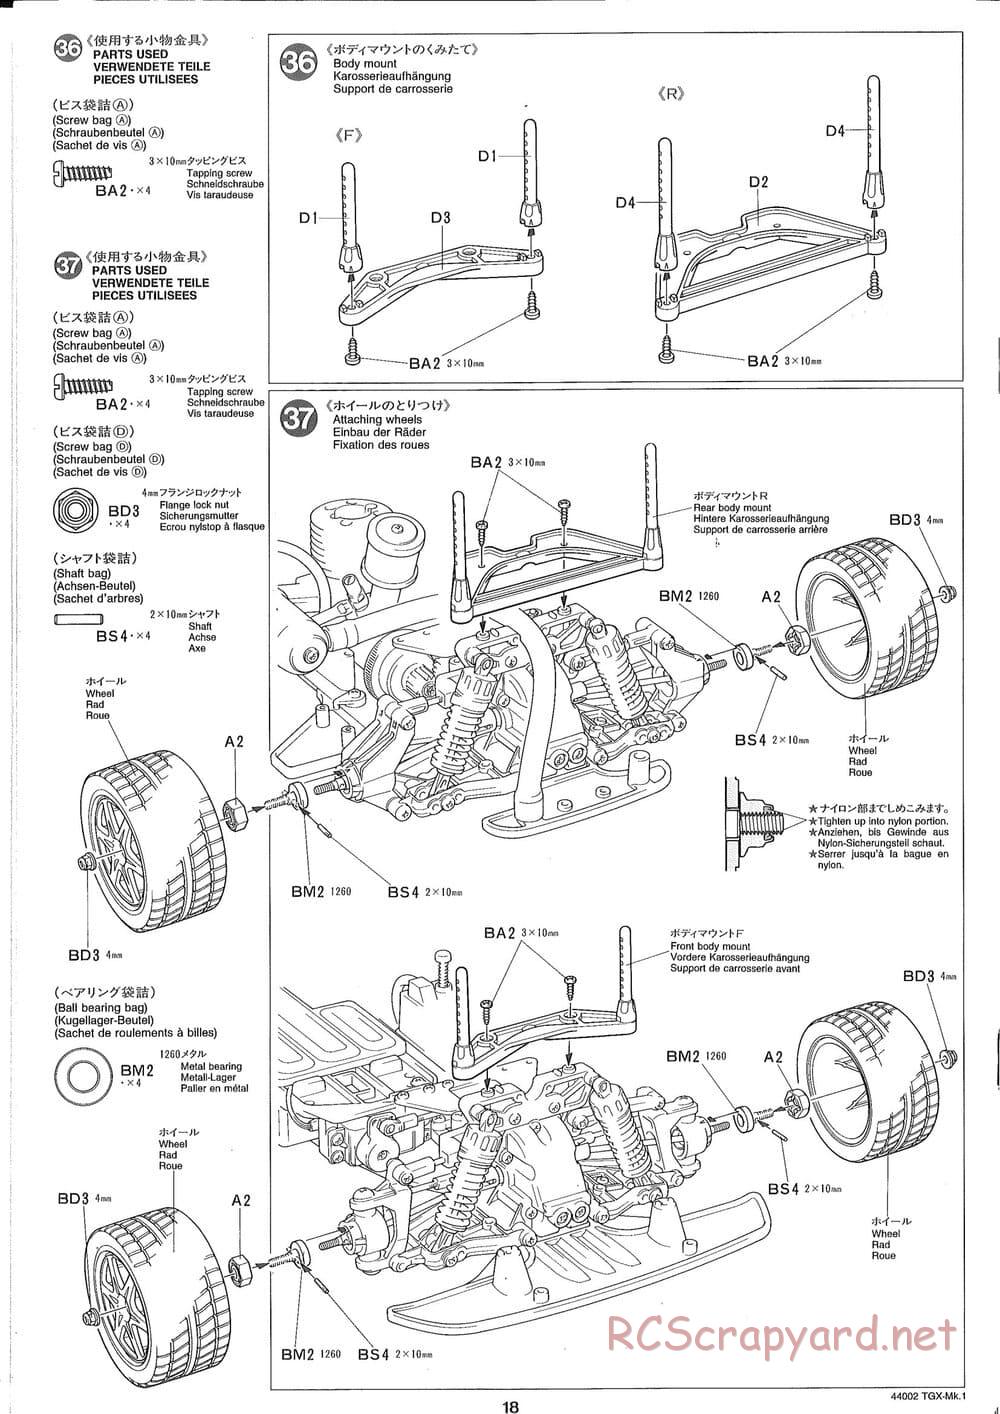 Tamiya - TGX Mk.1 TS Chassis Chassis - Manual - Page 18